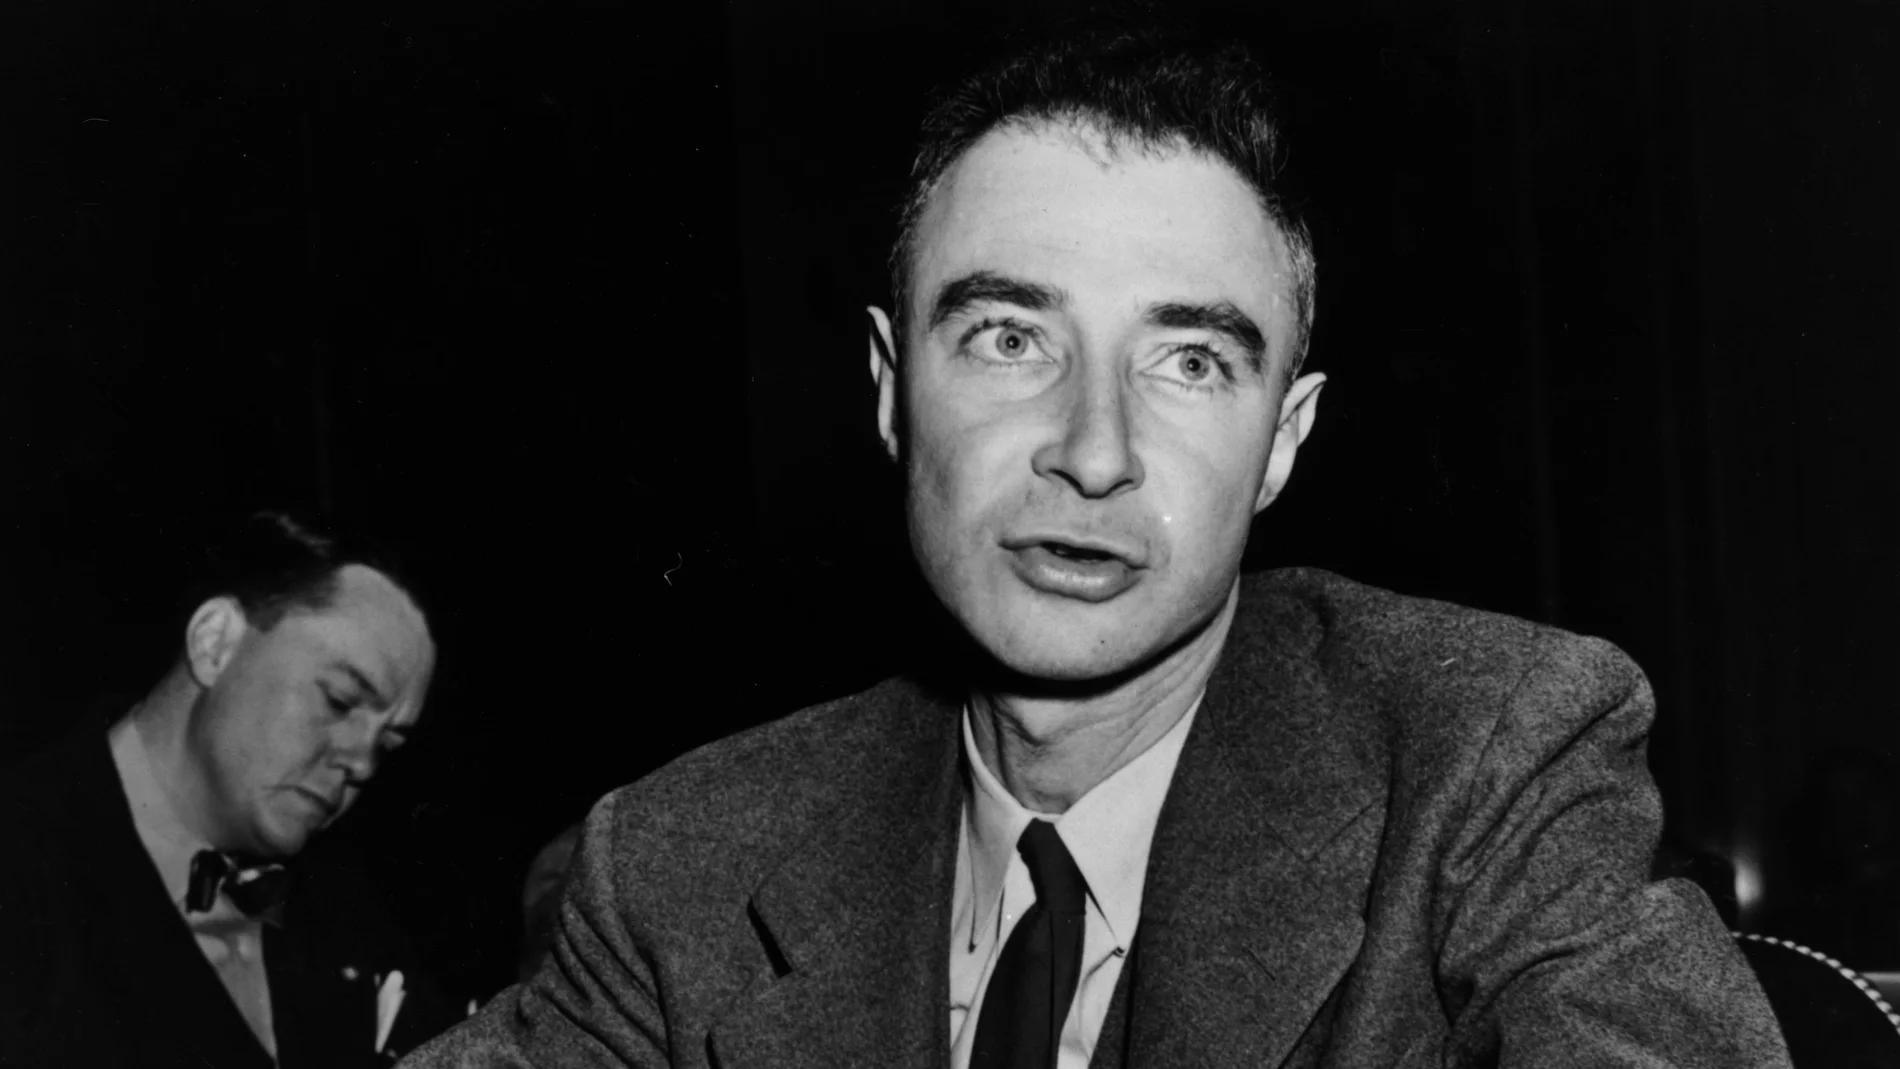 El físico nuclear estadounidense Julius Robert Oppenheimer, director del laboratorio atómico de Los Álamos, testificando ante el Comité Especial del Senado sobre Energía Atómica.